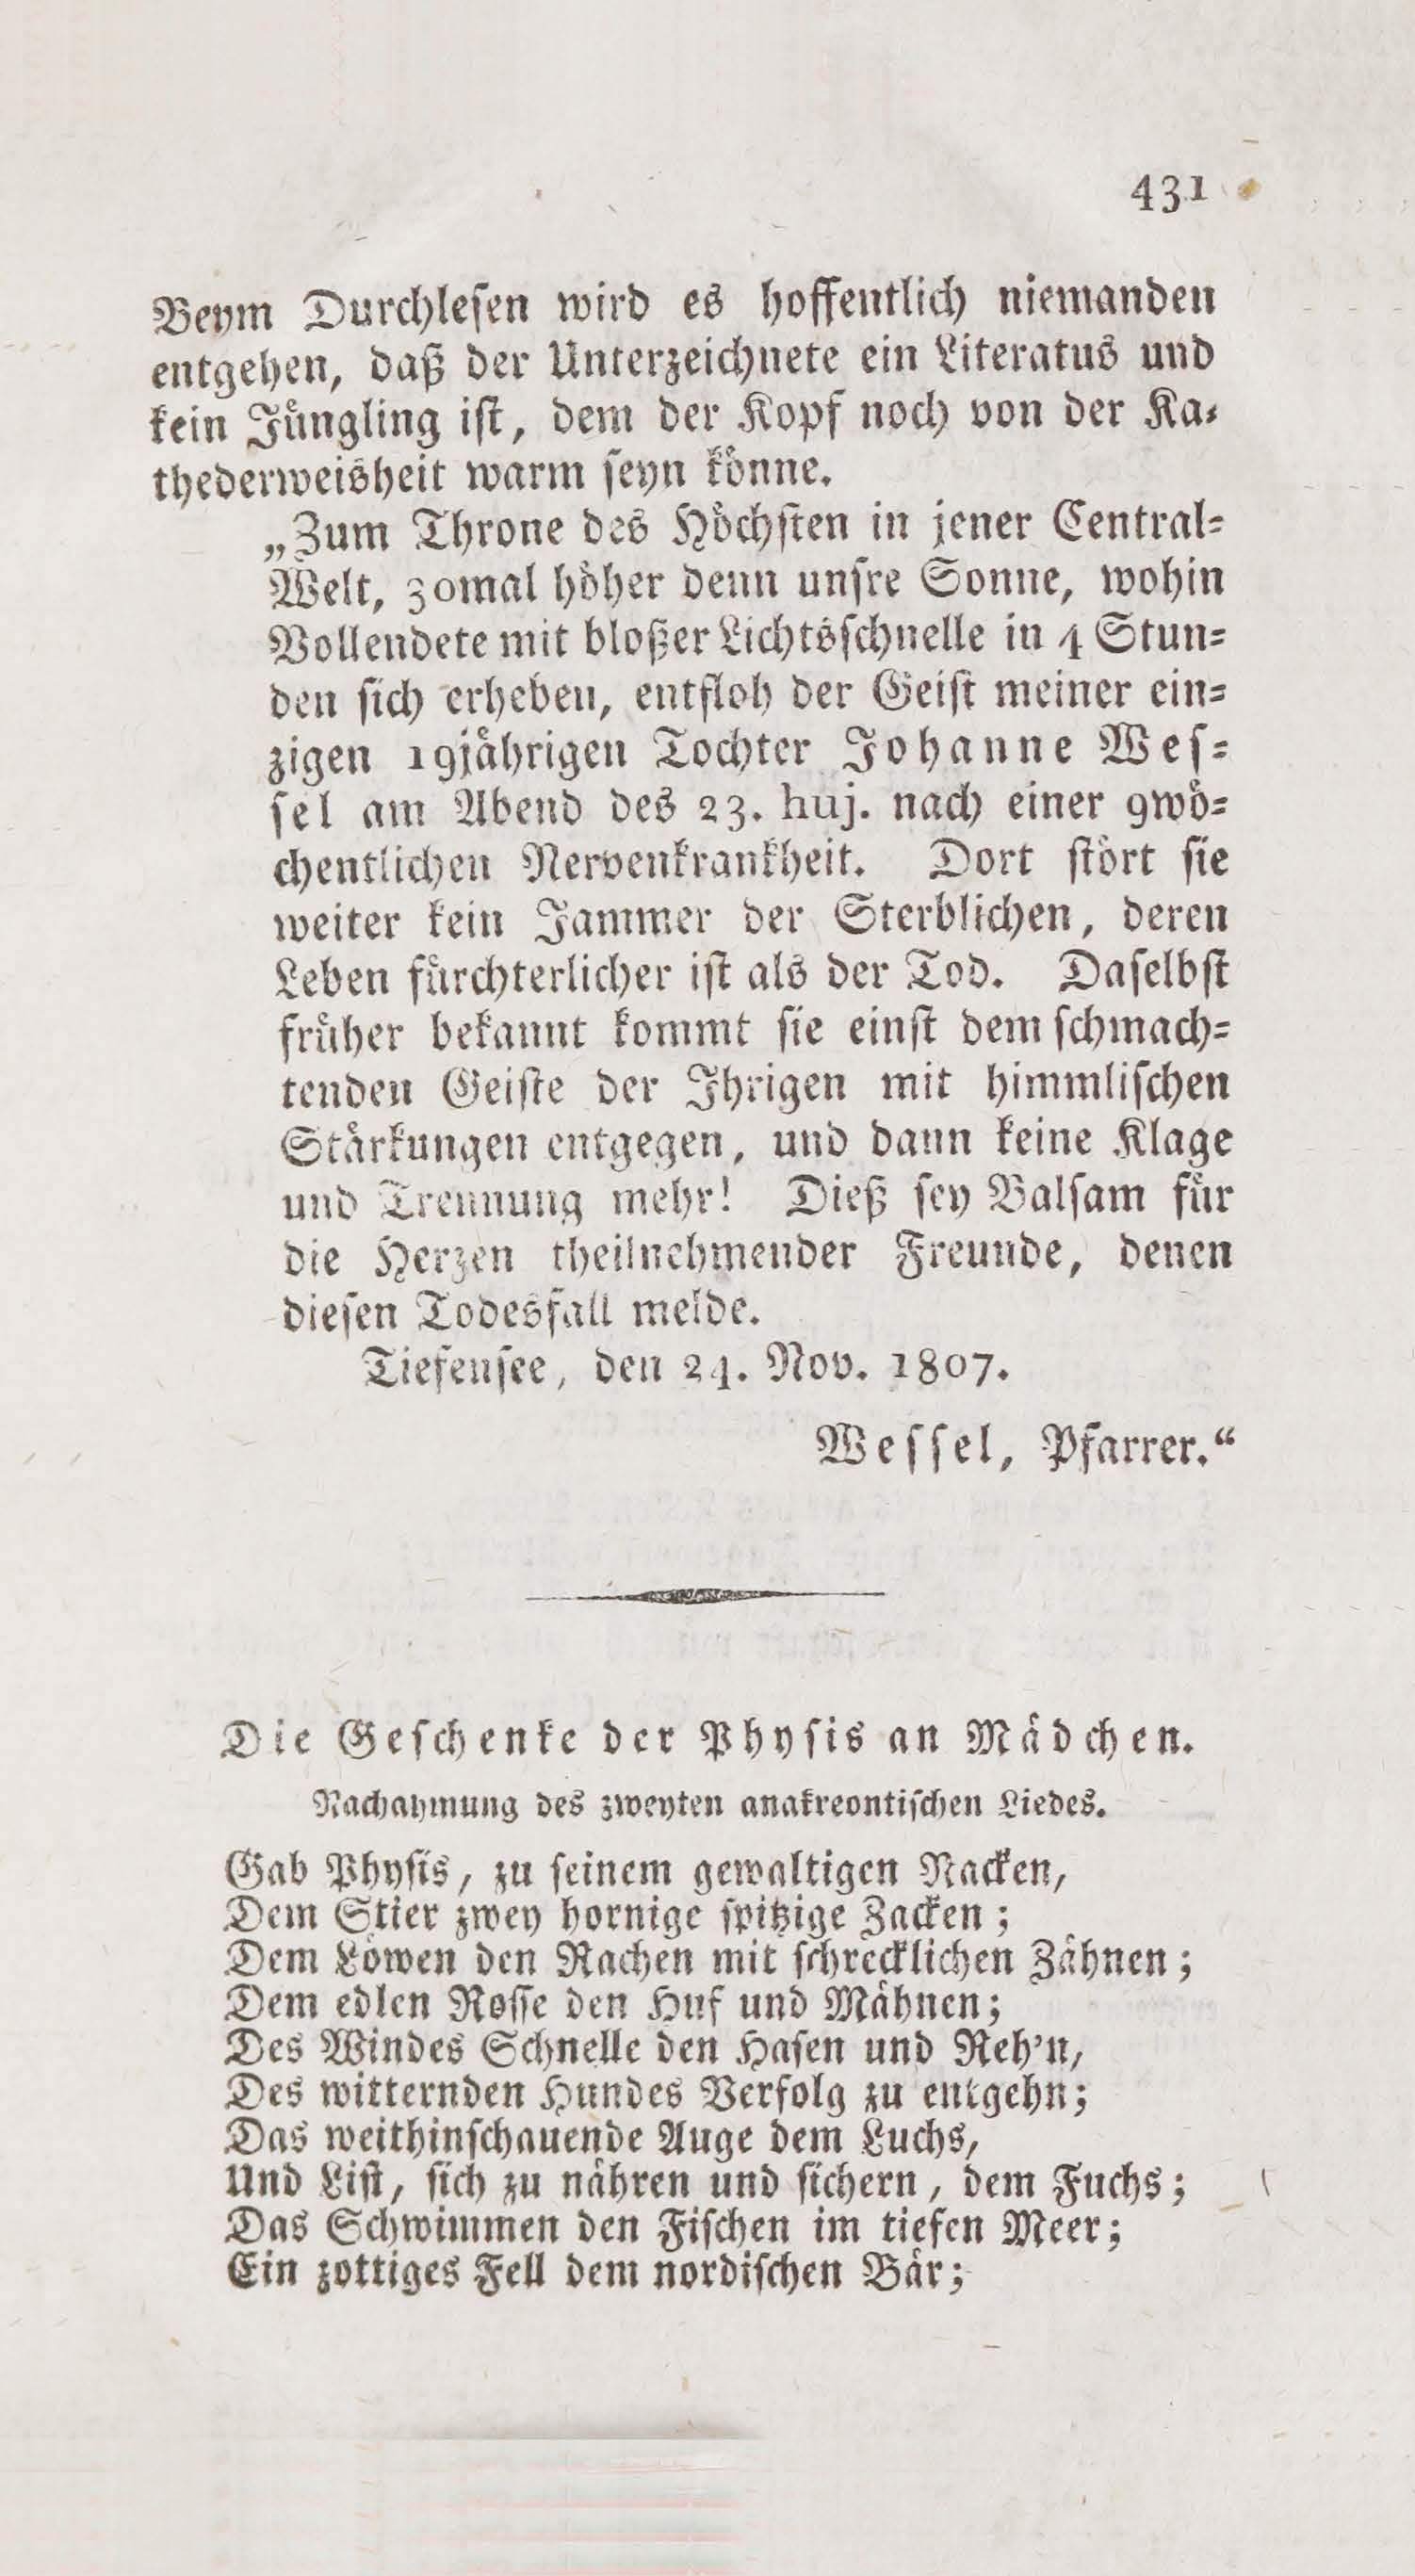 Wöchentliche Unterhaltungen (1805 – 1807) | 2627. (431) Основной текст